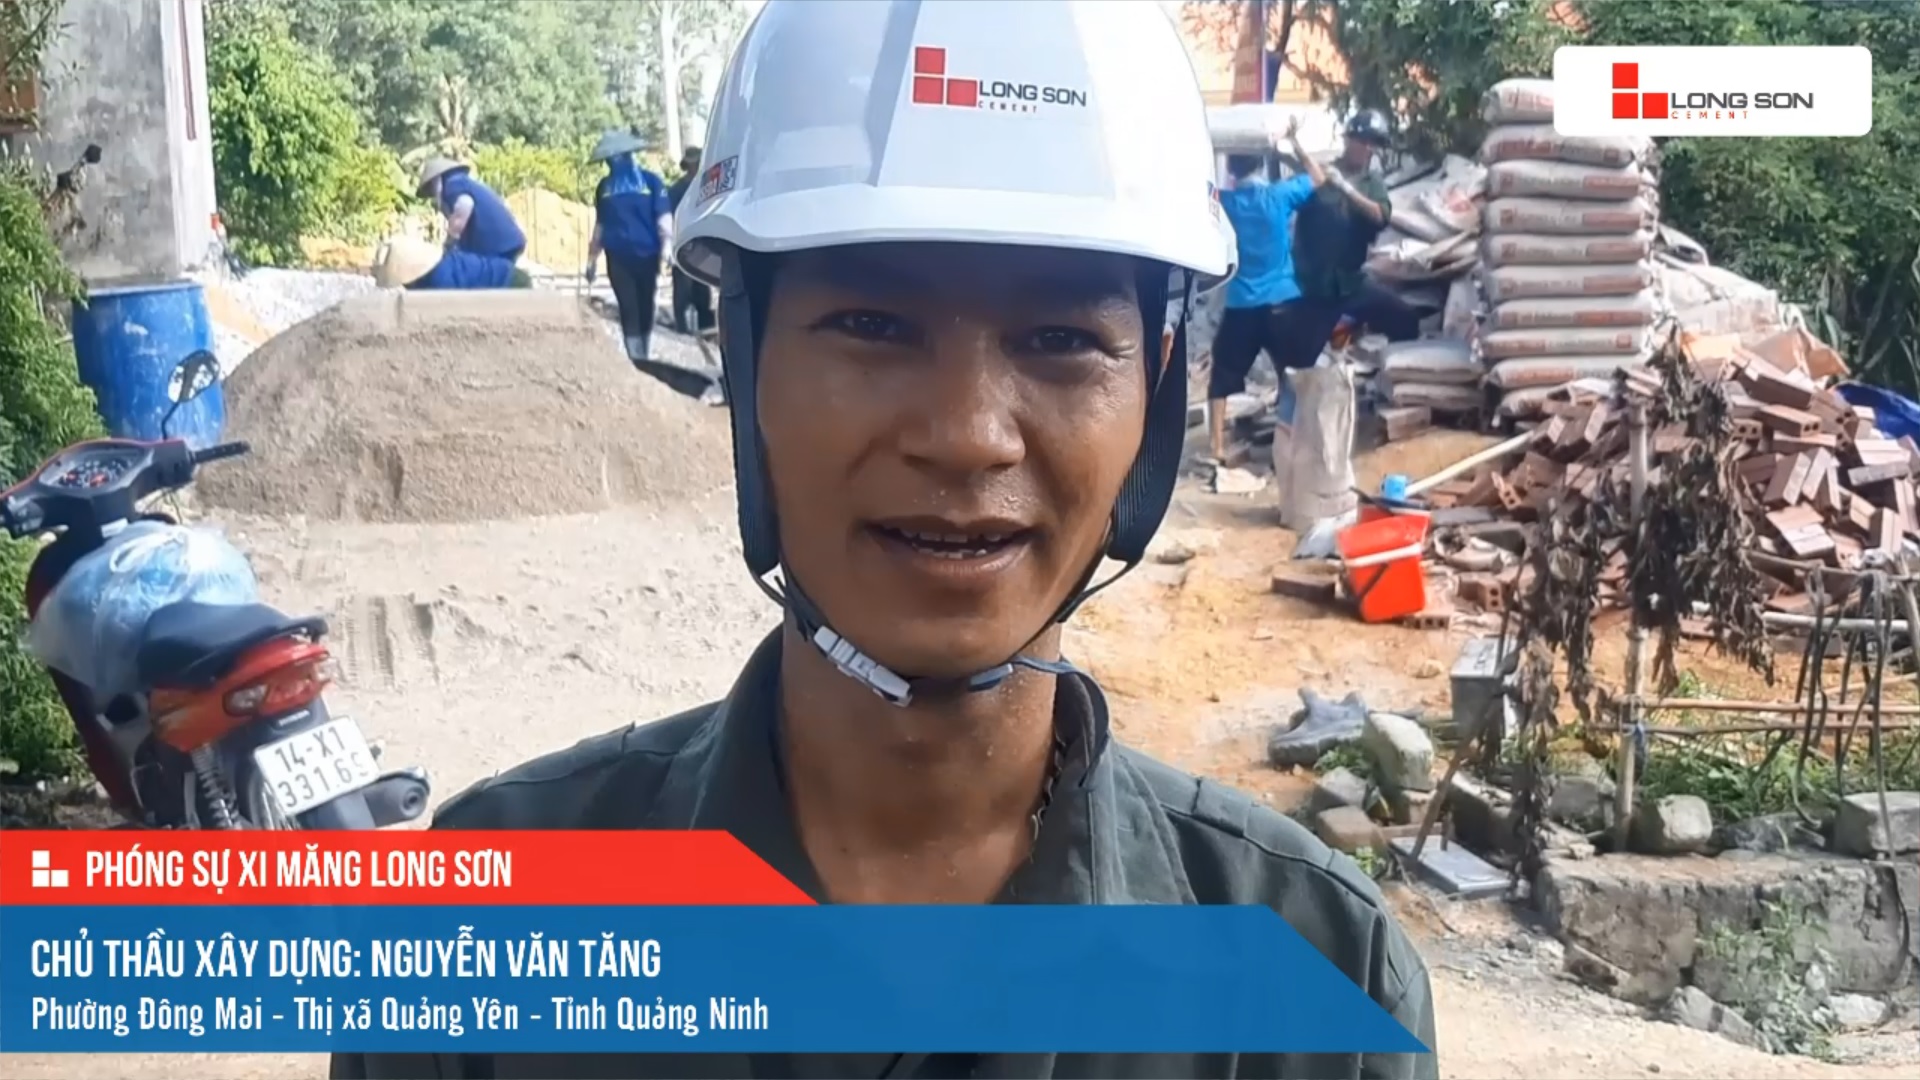 Phóng sự công trình sử dụng xi măng Long Sơn tại Quảng Ninh ngày 16/07/2021